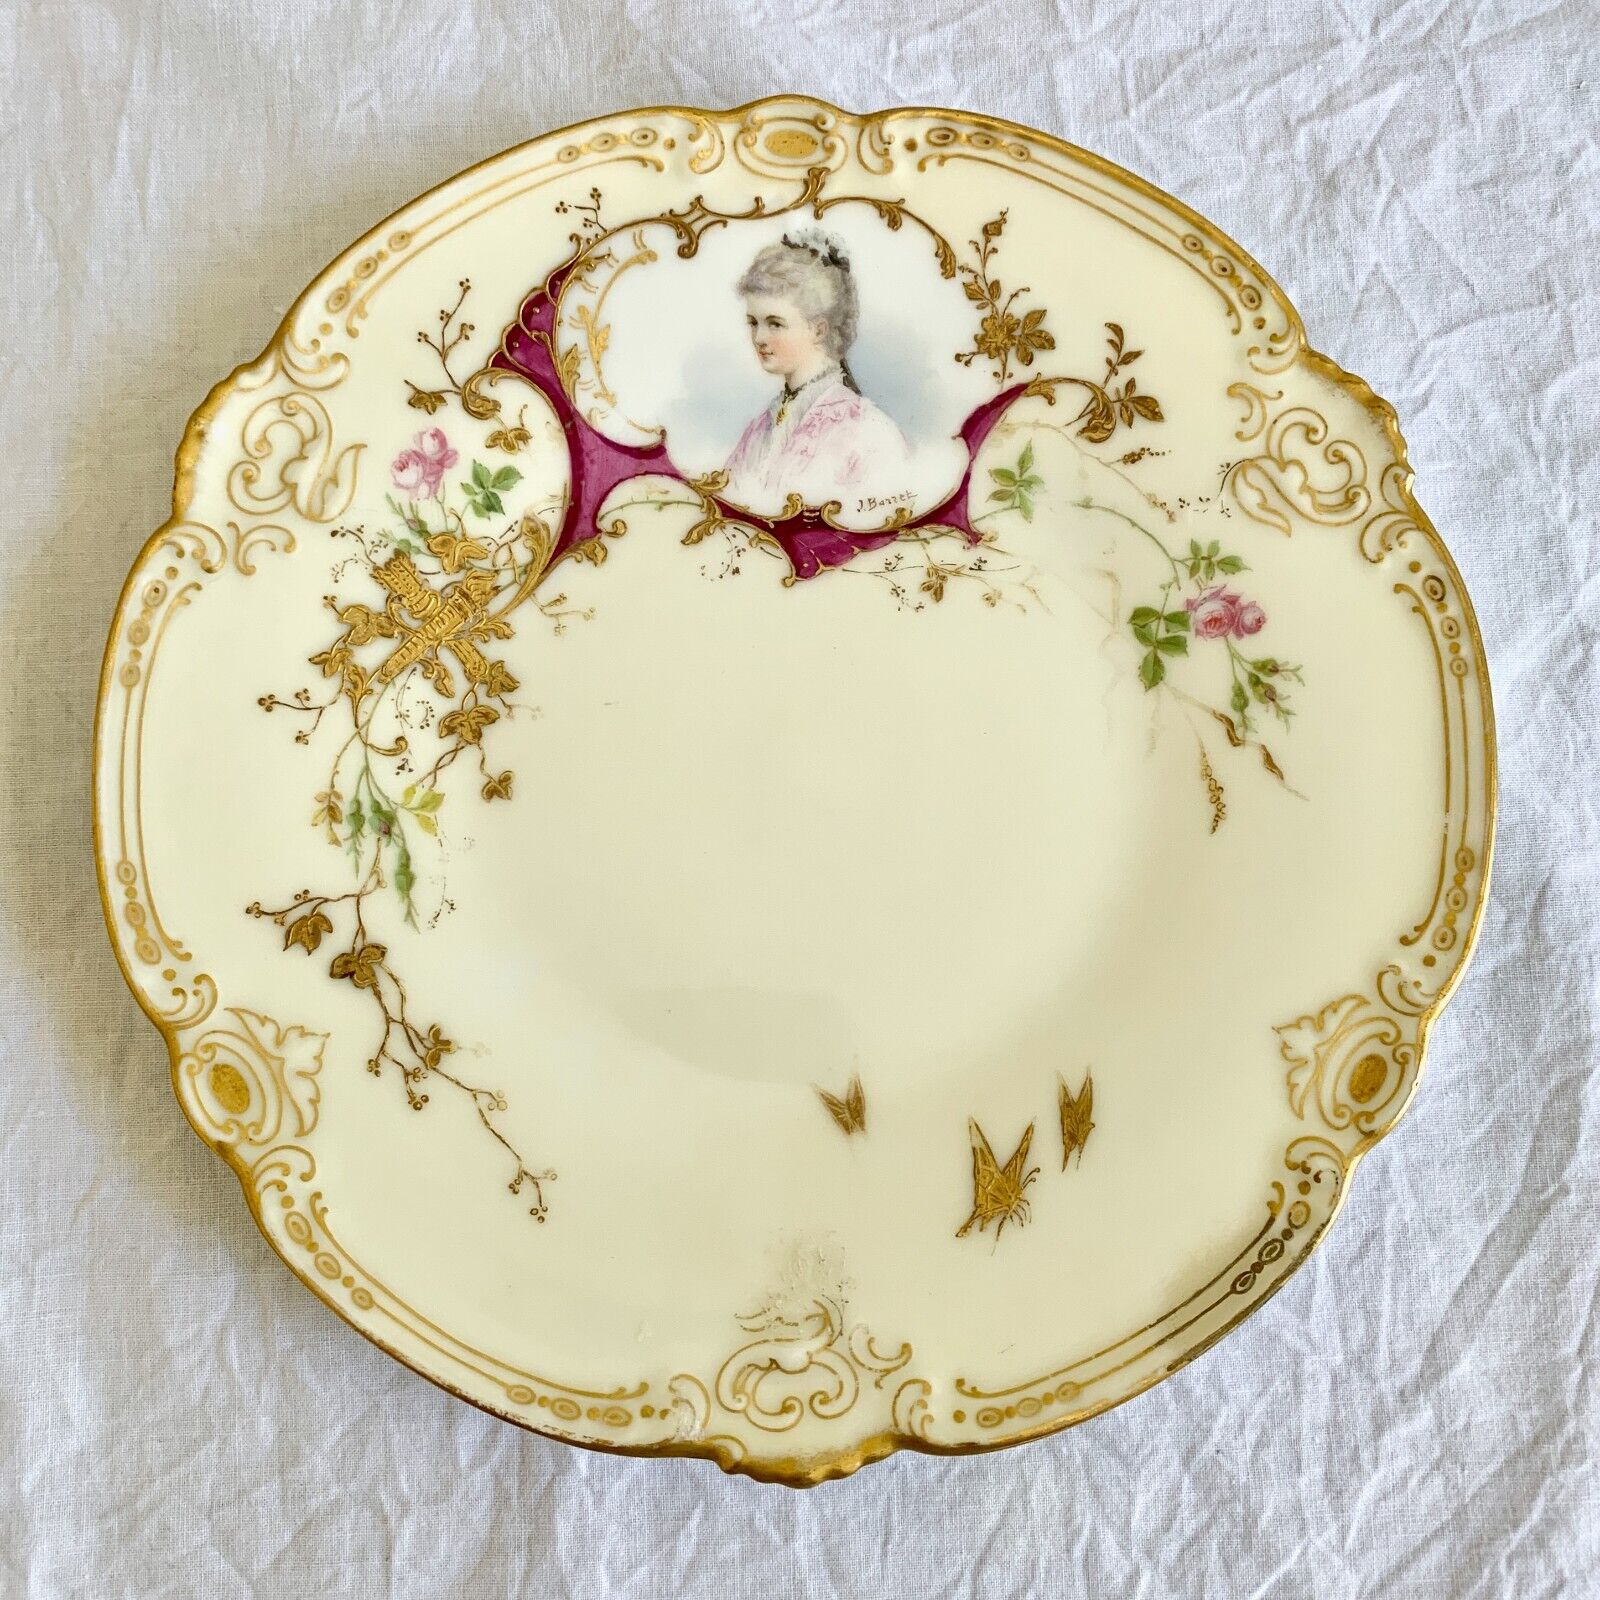 Antique French Sevres Style Porcelain Portrait Plate Signed J. Bazzek